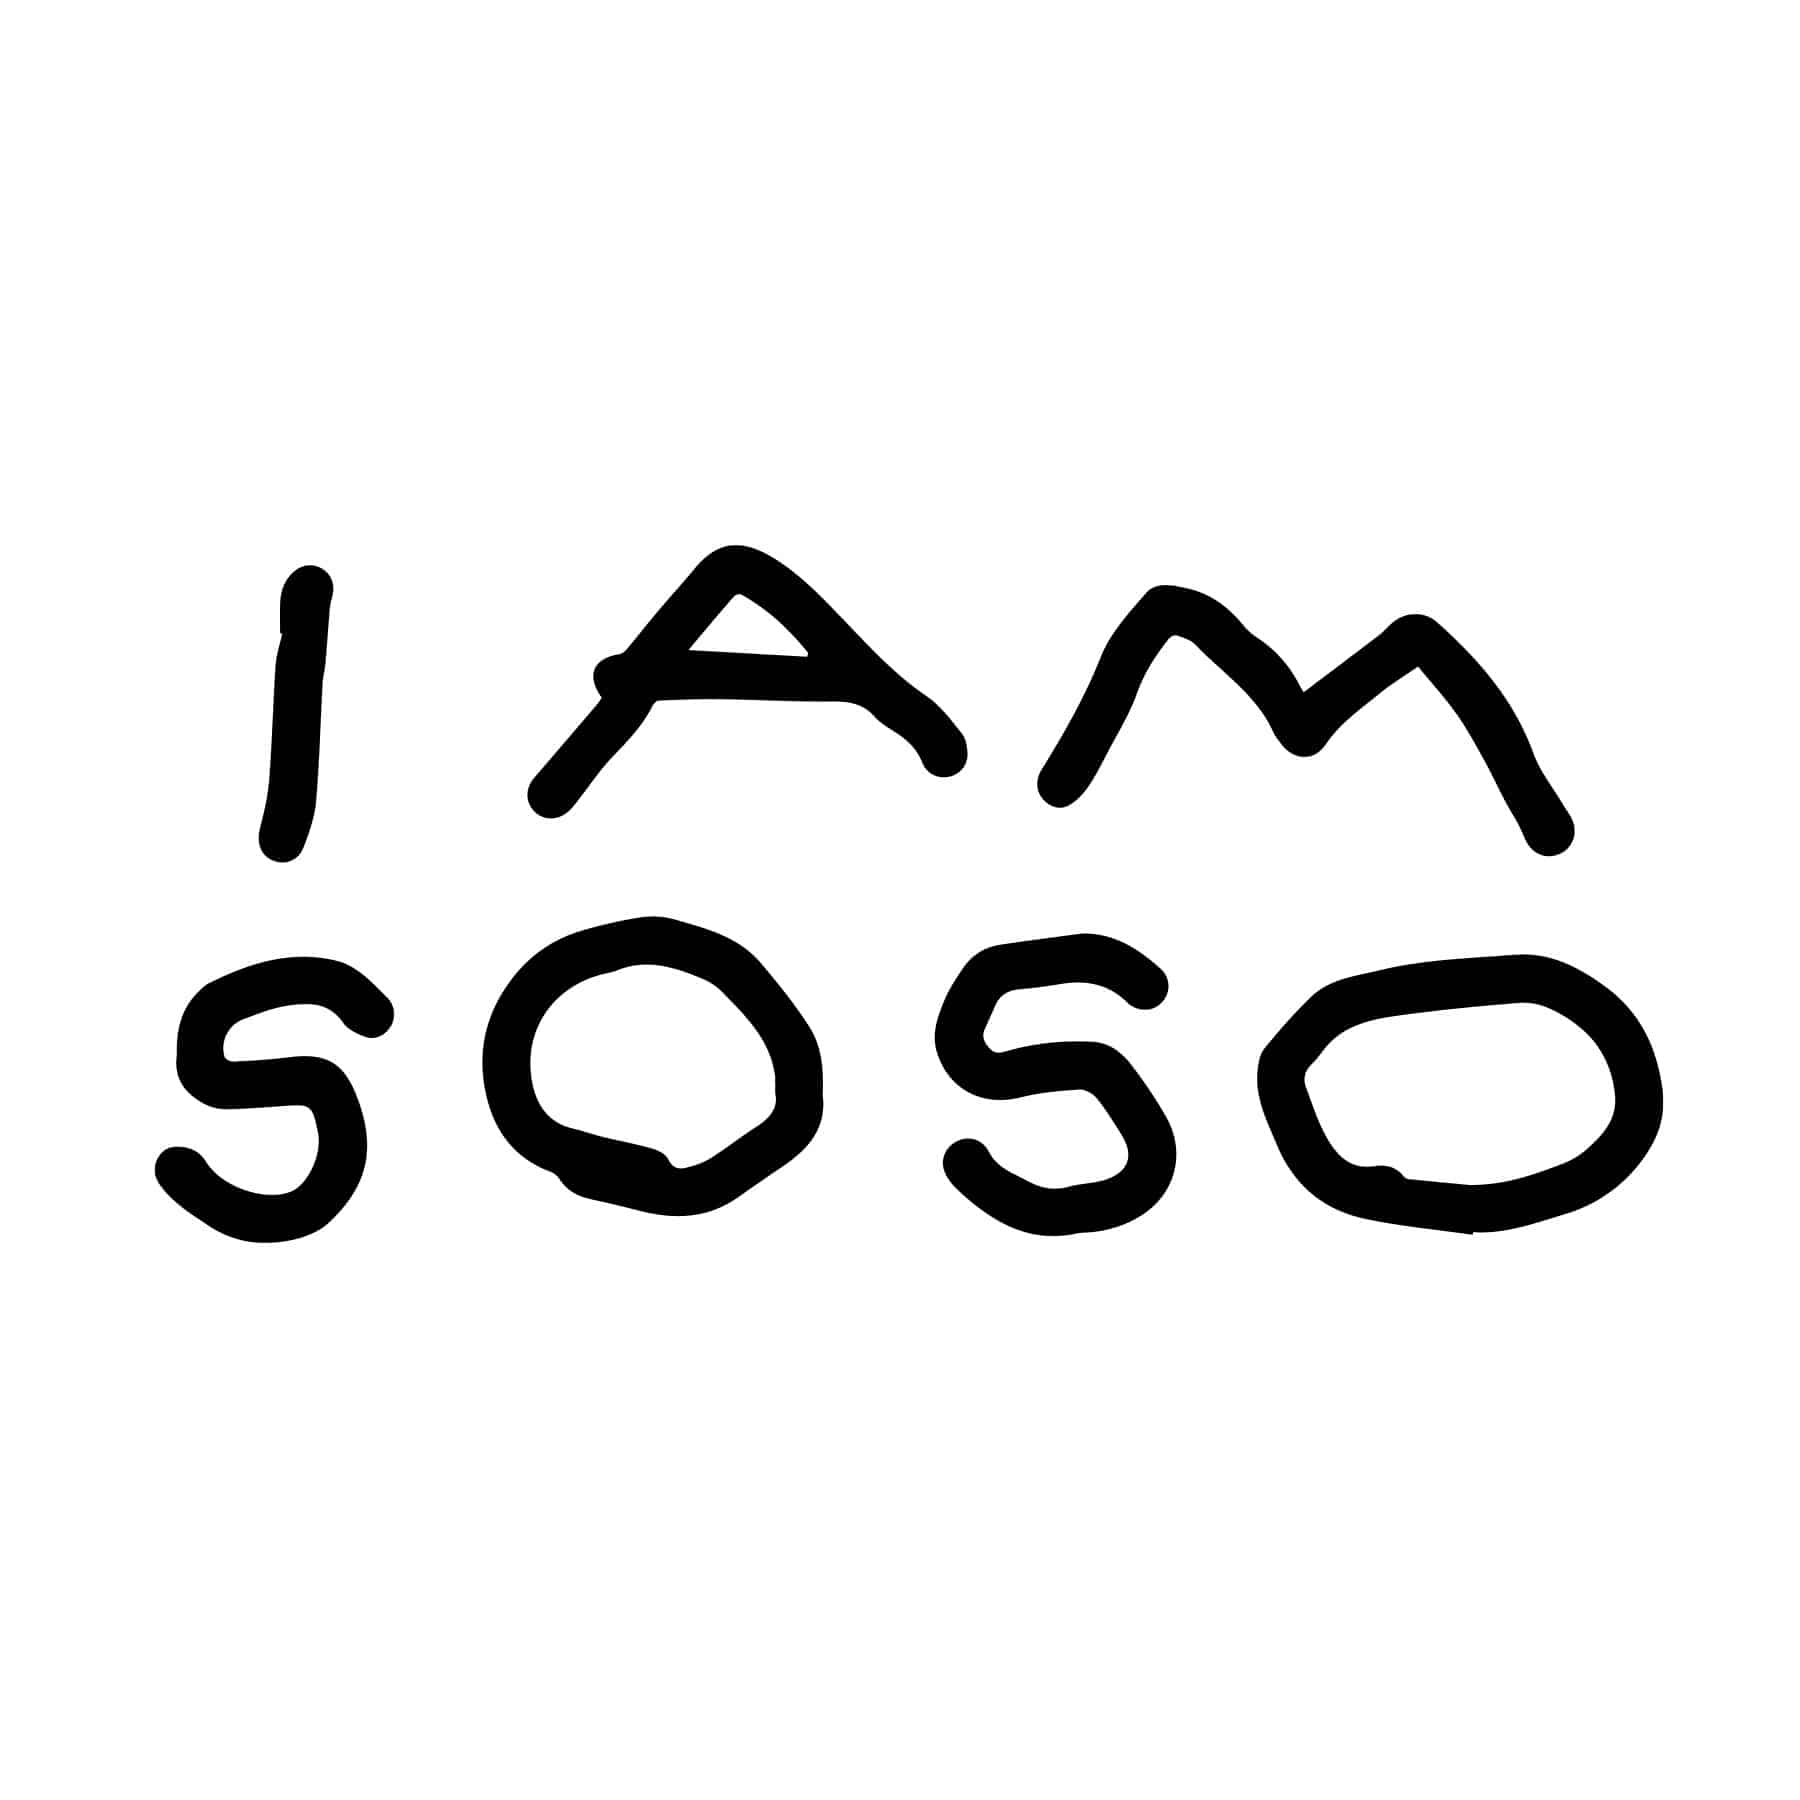 I AM SOSO